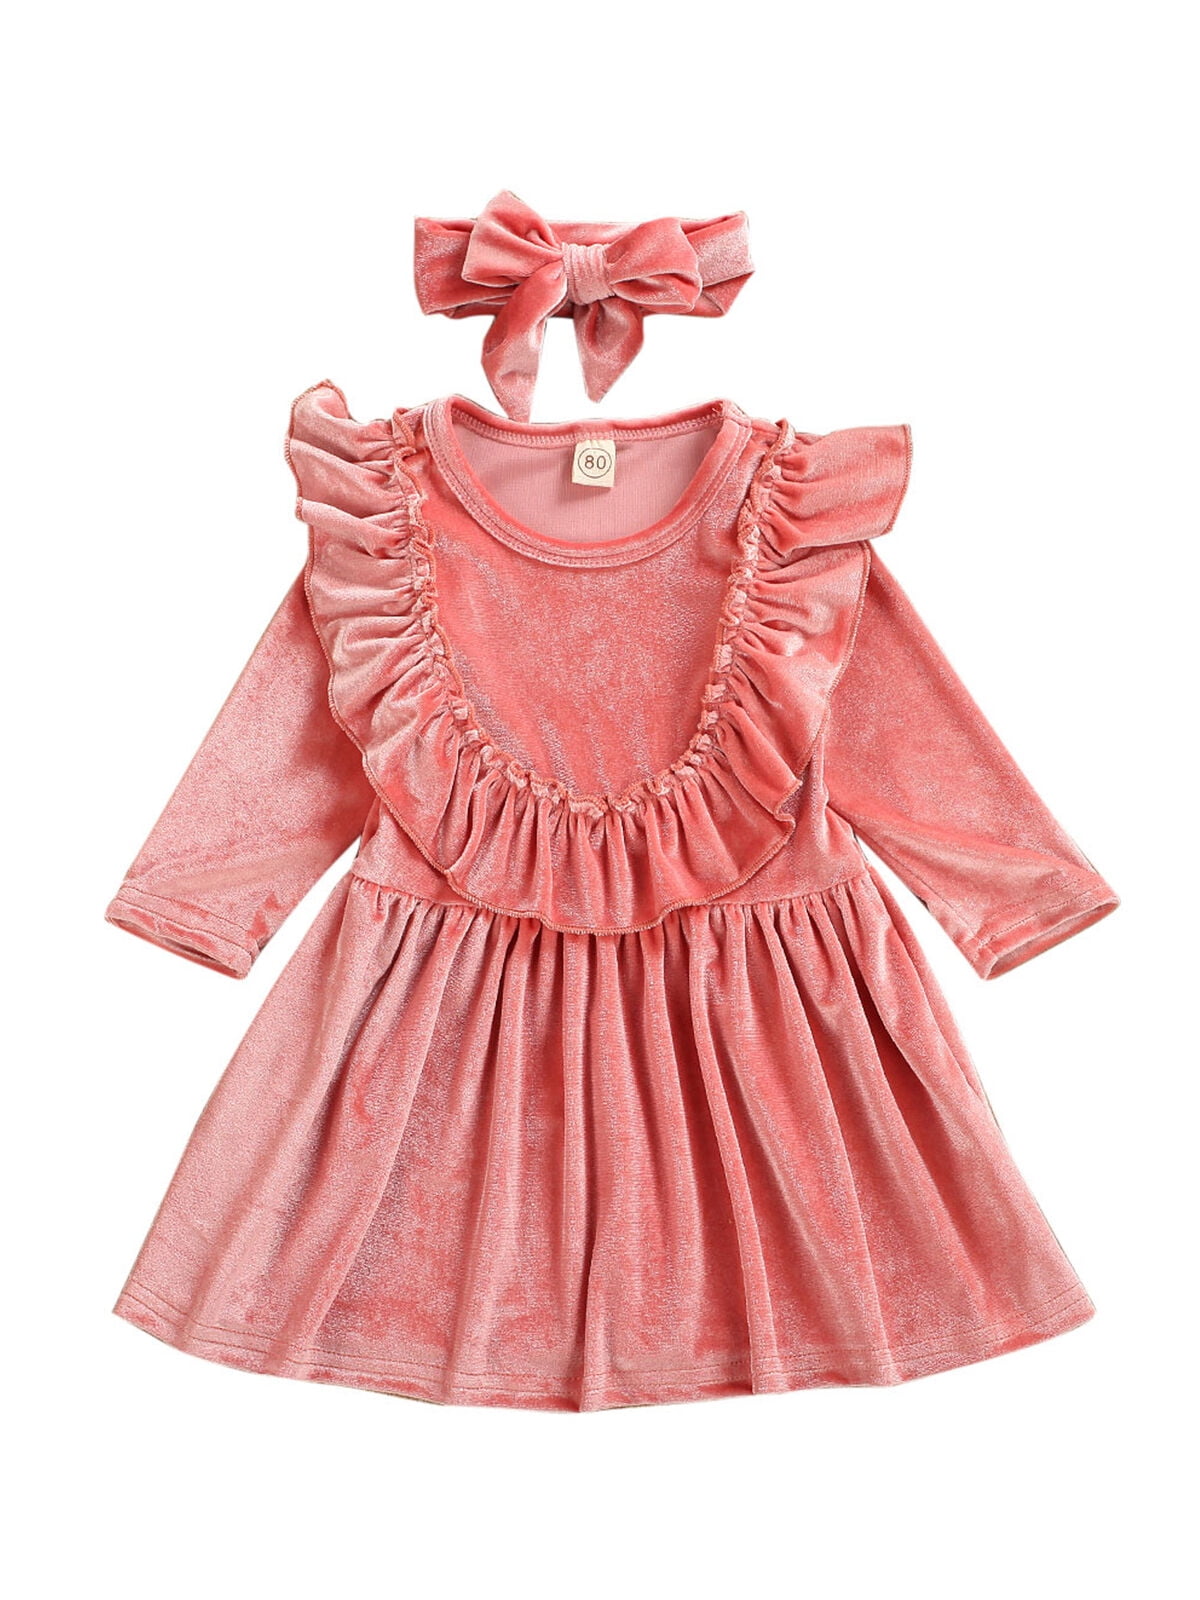 wsevypo - Toddler Kids Baby Girls Velvet Dress Long Sleeve Solid Ruffle ...